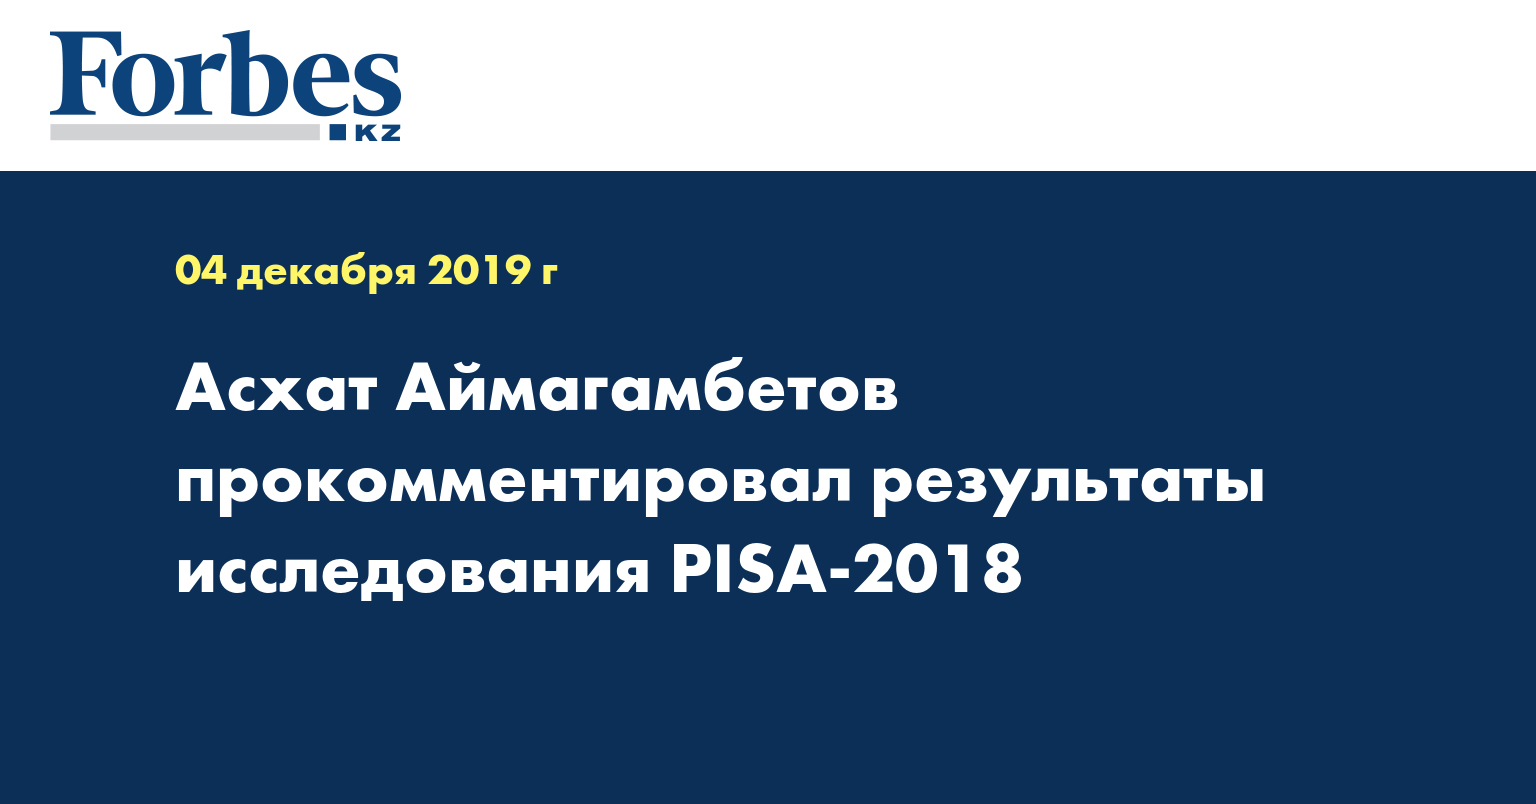 Асхат Аймагамбетов прокомментировал результаты исследования PISA-2018